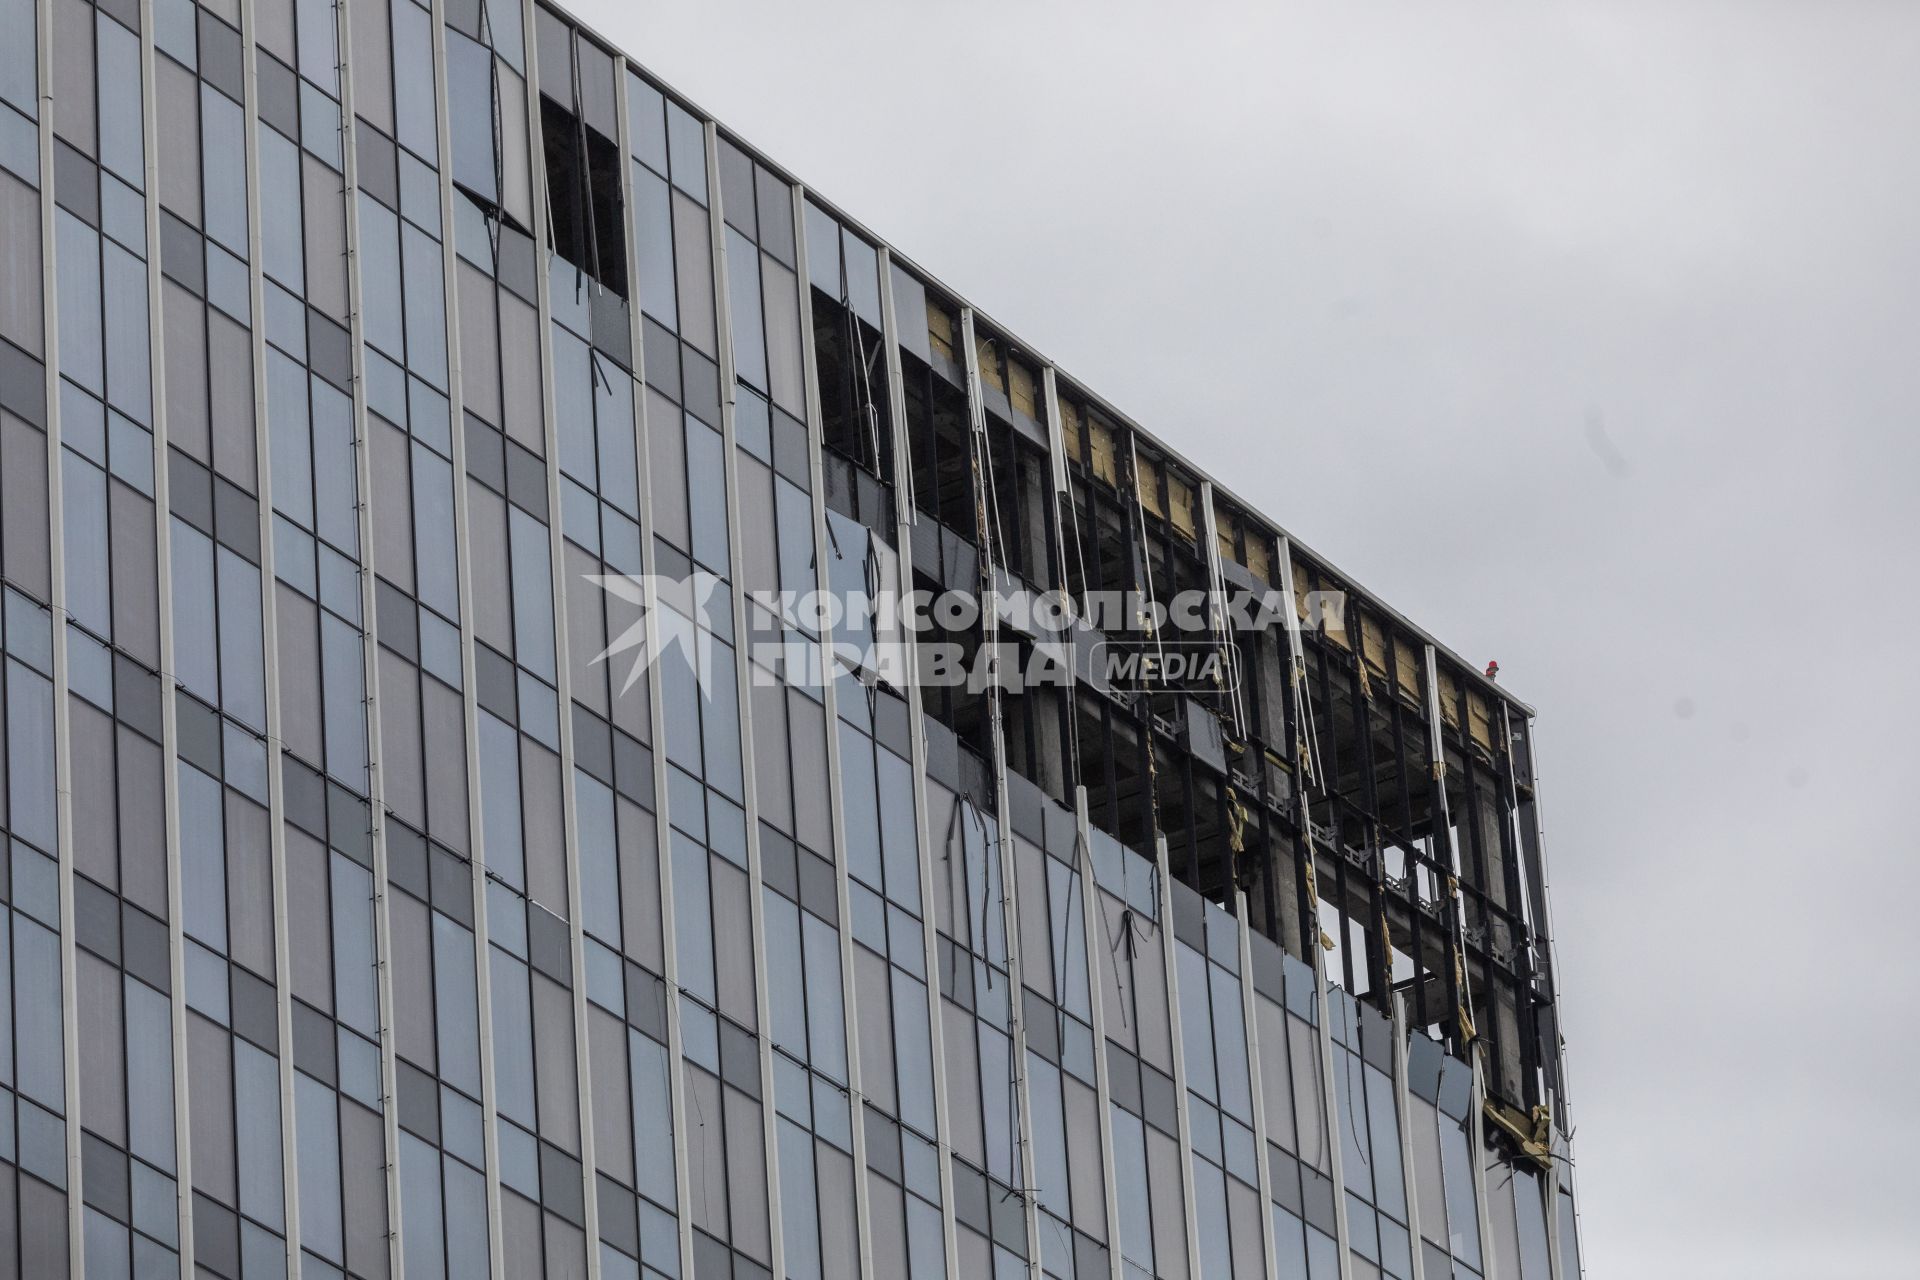 Москва. Здание бизнес-центра на проспекте Лихачева, поврежденное беспилотником.